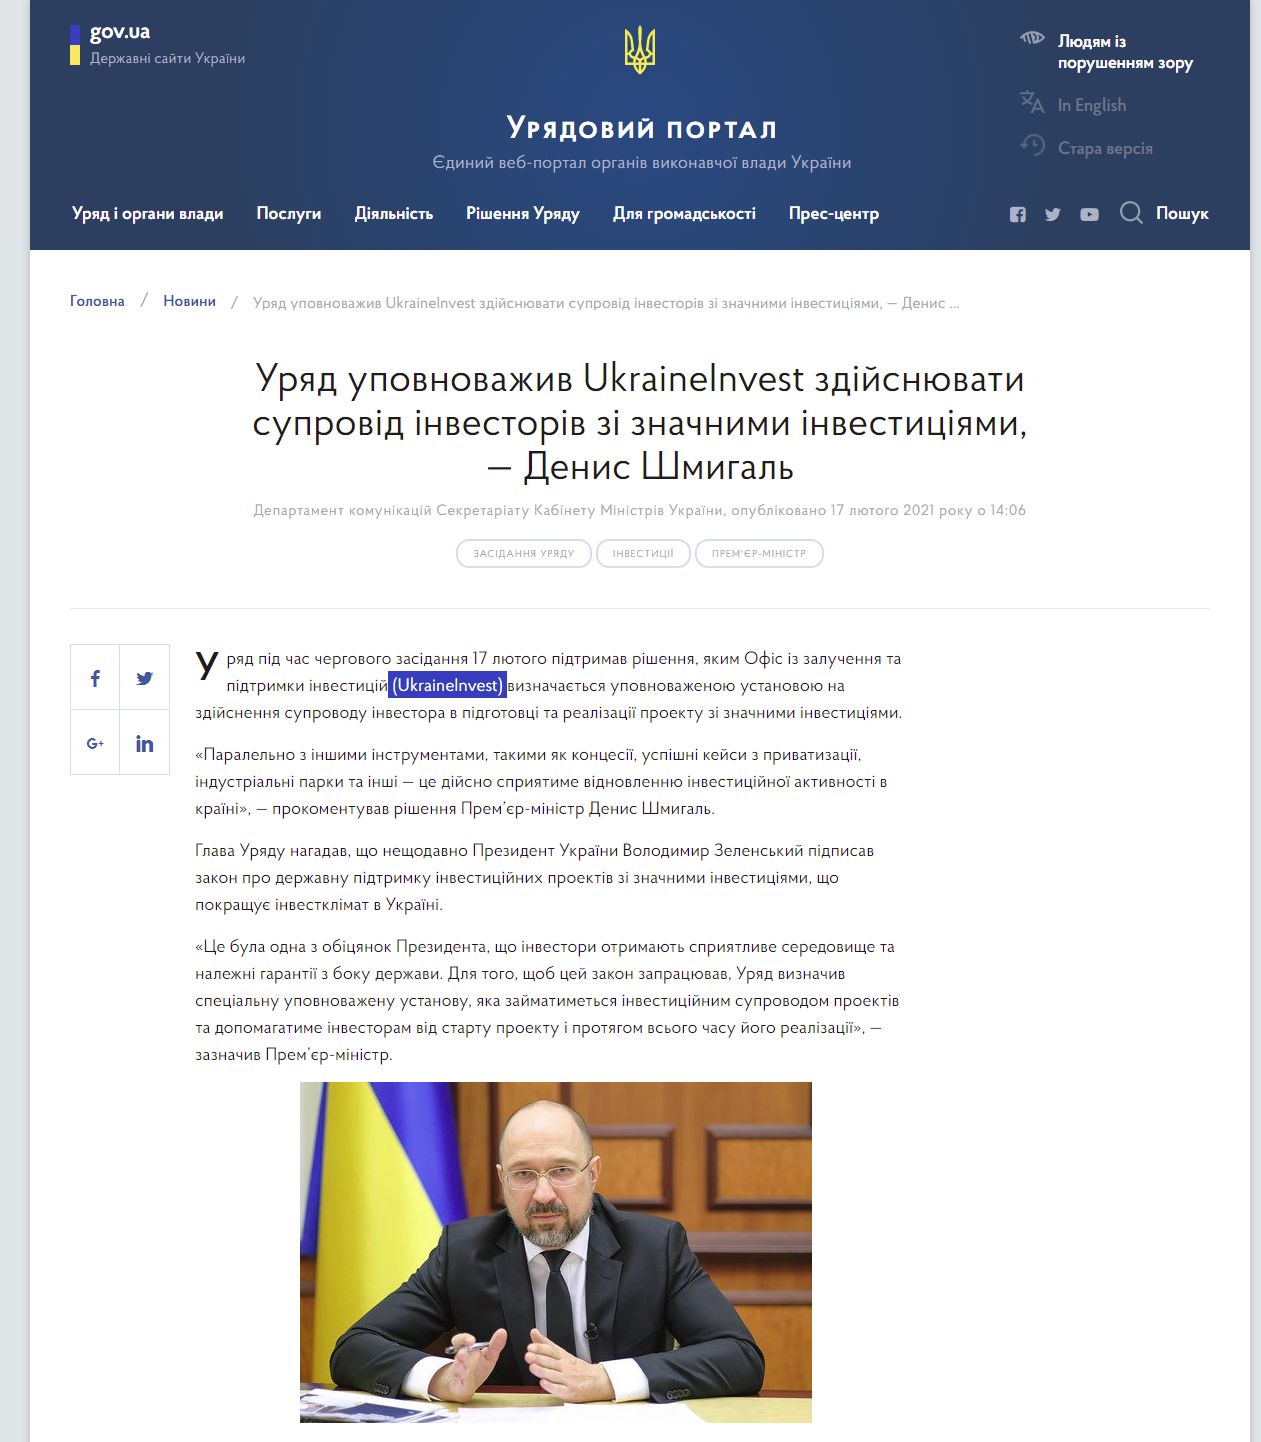 https://www.kmu.gov.ua/news/uryad-upovnovazhiv-ukraineinvest-zdijsnyuvati-suprovid-investoriv-zi-znachnimi-investiciyami-denis-shmigal